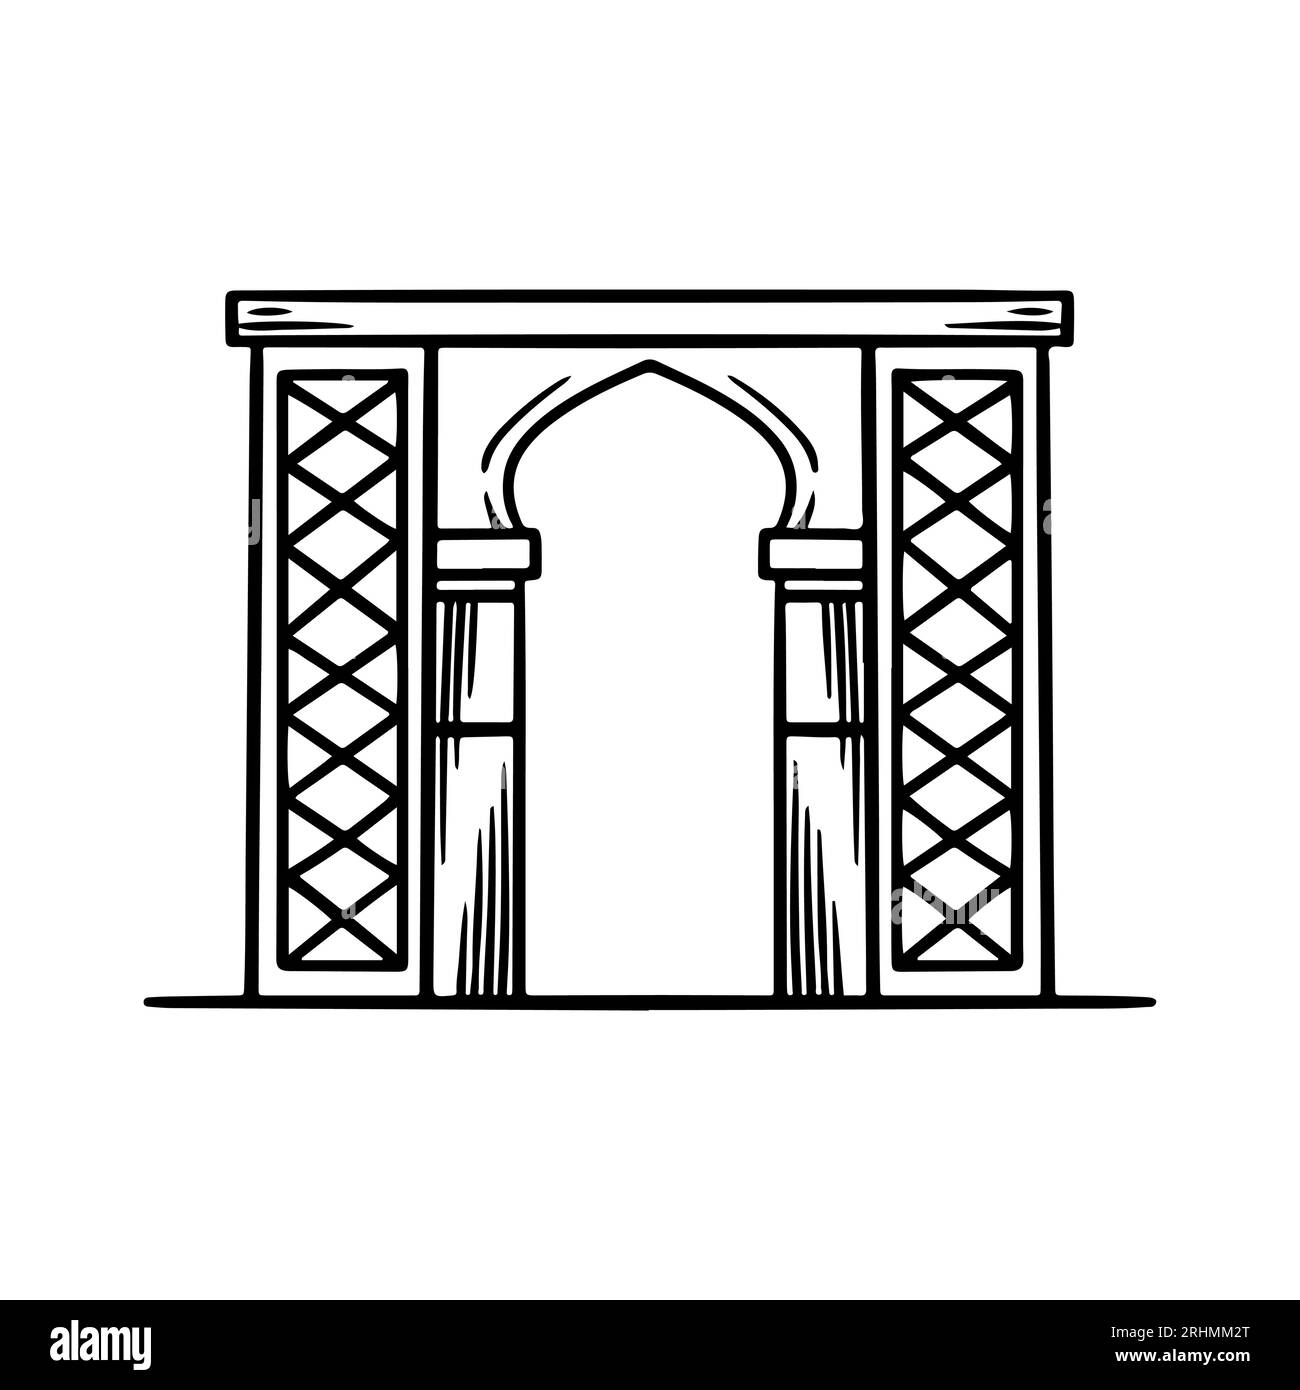 Edificio con cancello islamico, disegno a mano vettoriale. Illustrazione Vettoriale